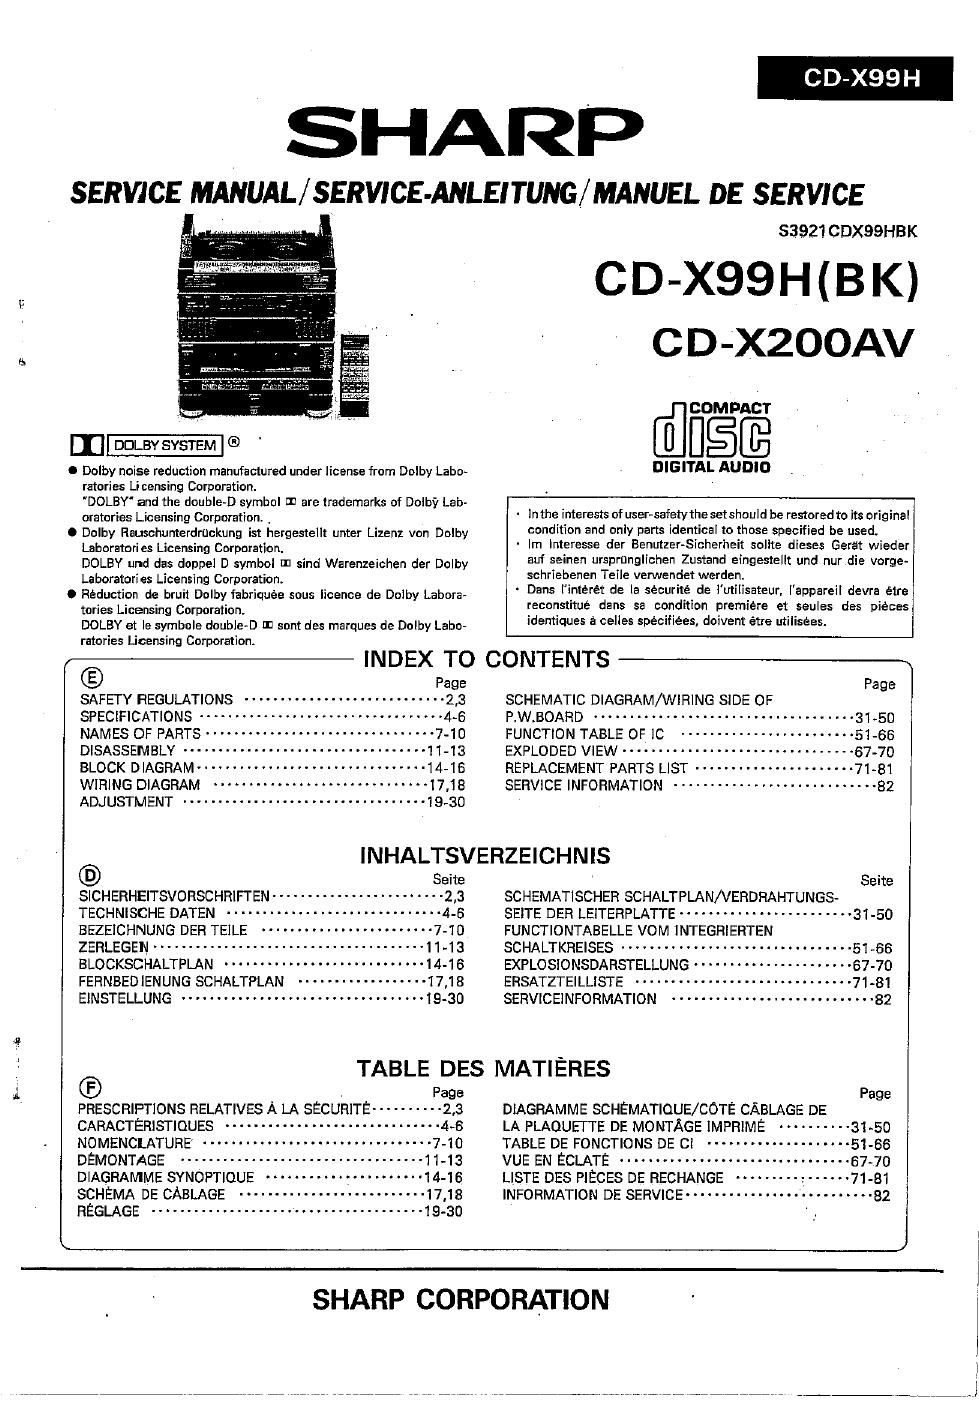 sony cdx 200 av service manual